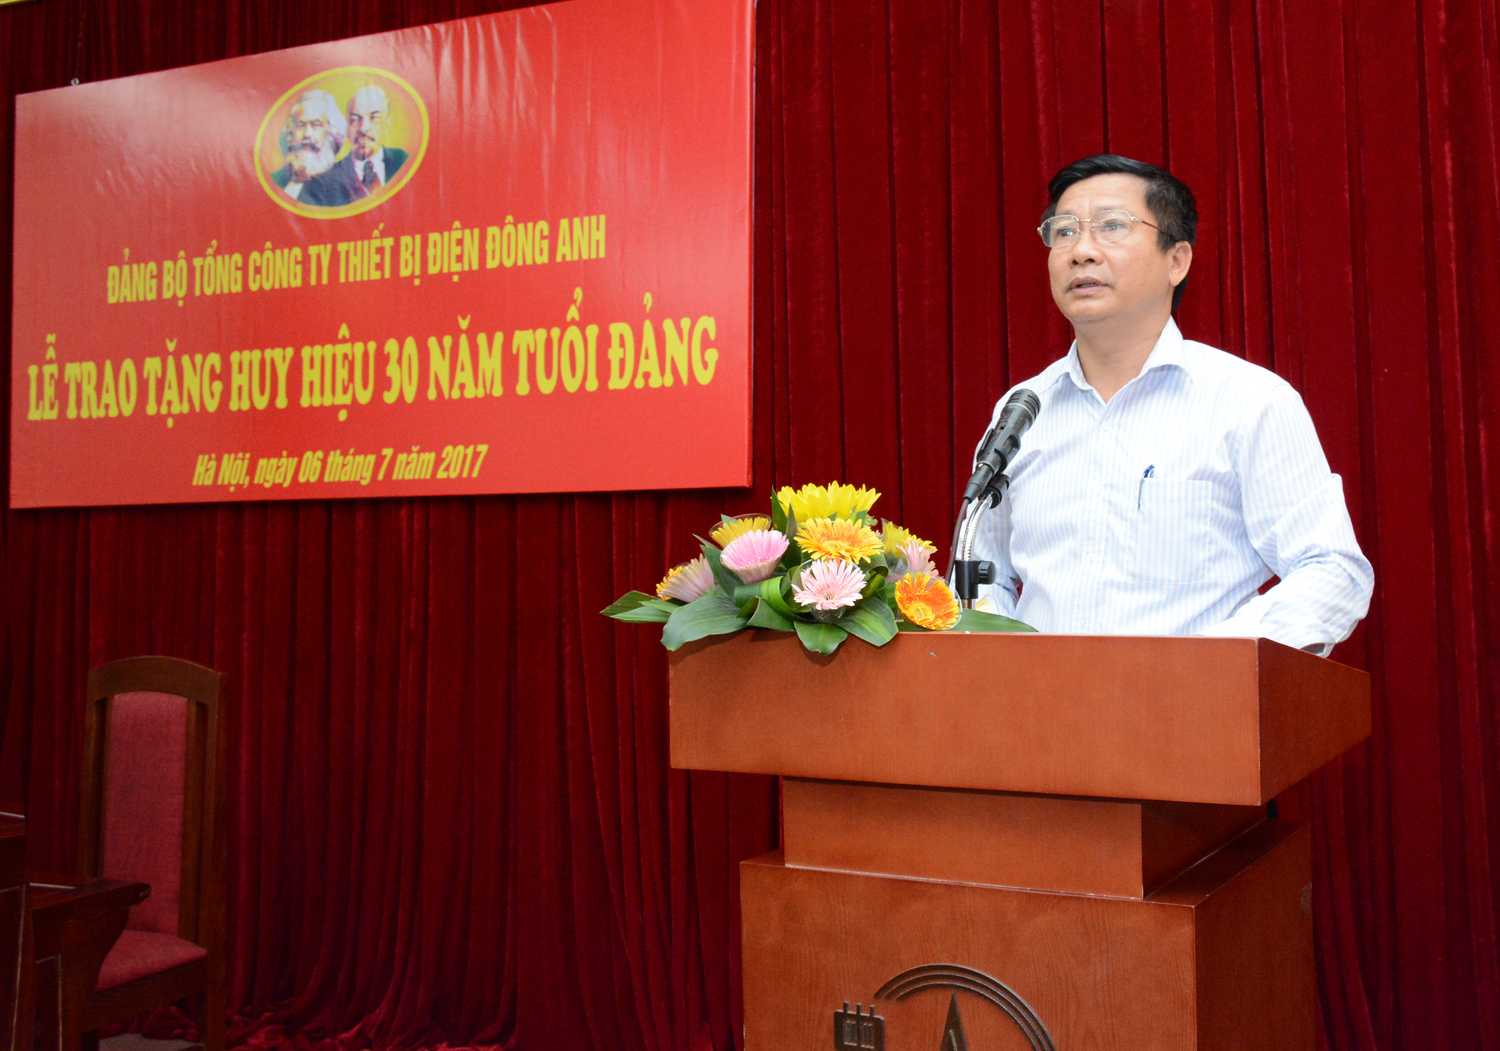 Đồng chí Trịnh Huy Thành - Bí thư Đảng ủy Khối Công nghiệp Hà Nội đến thăm và làm việc với EEMC